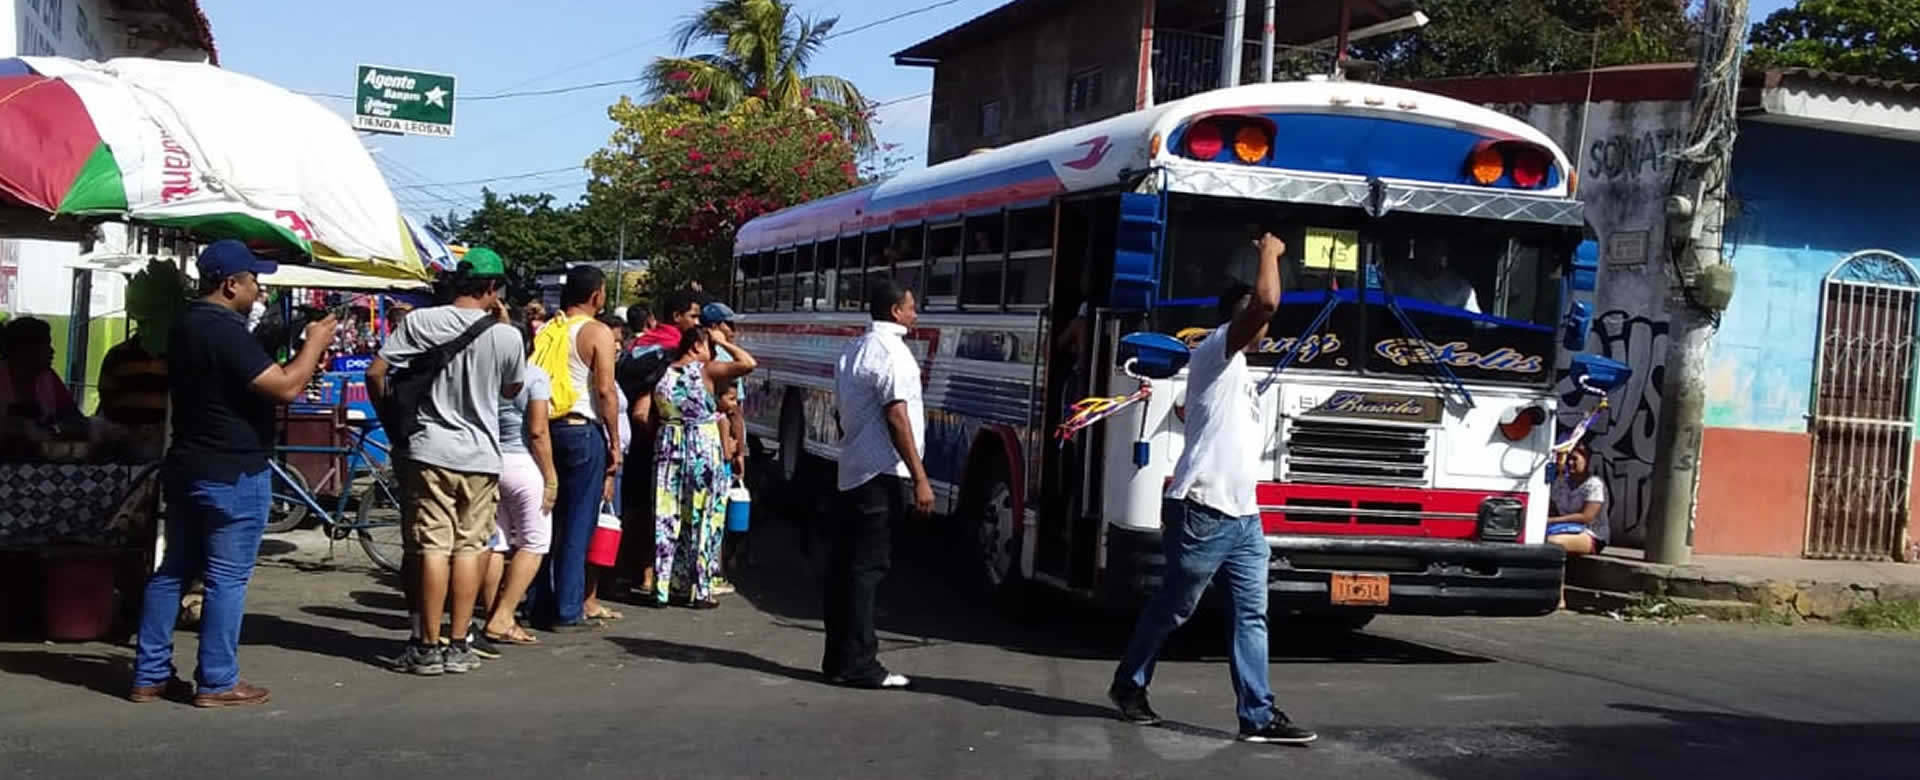 Extensas filas de buses arriban al Mercadito de Sutiaba en León